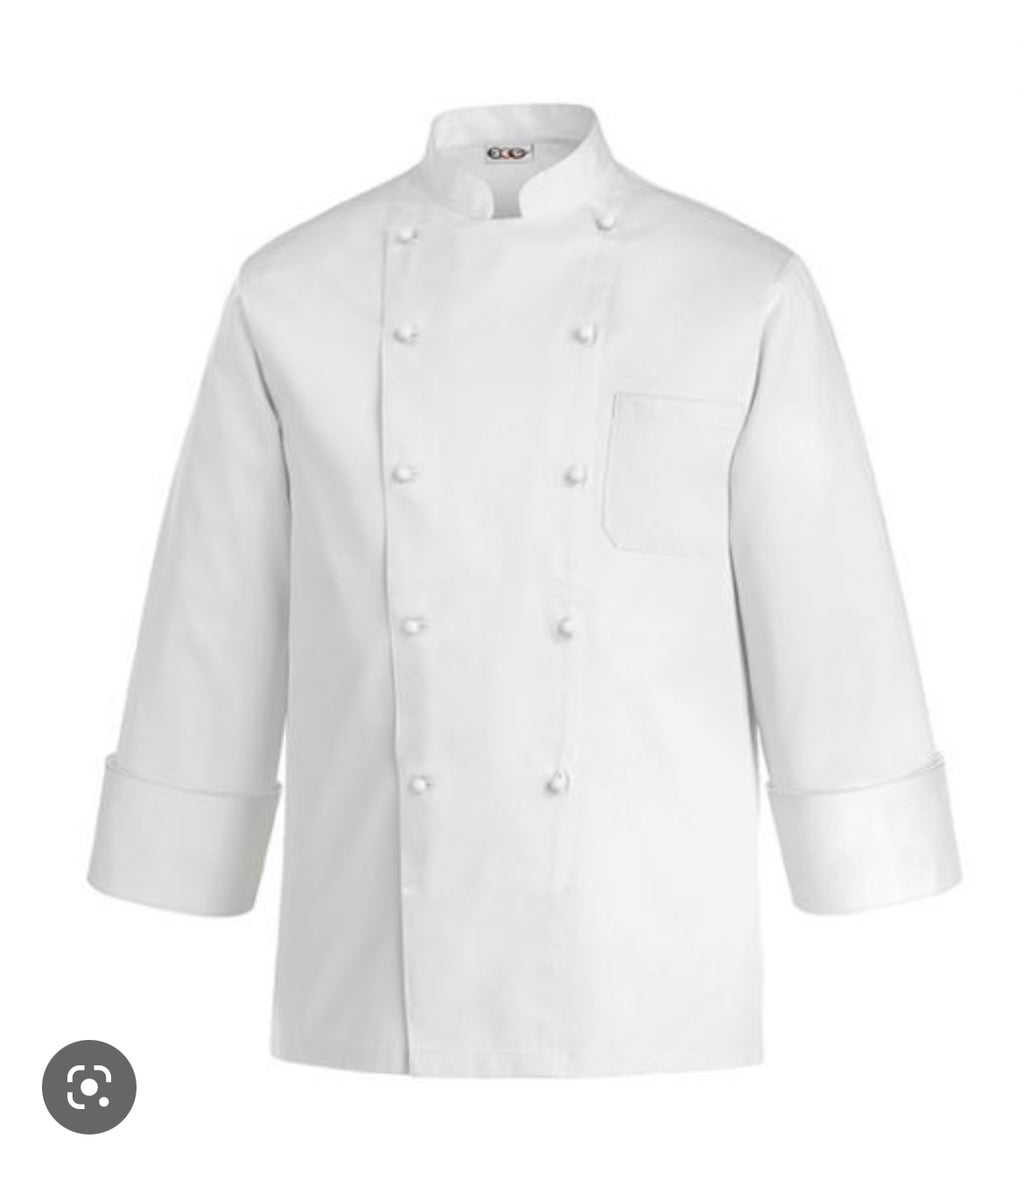 Ego Chef Standard Jacket (Long Sleeve) White